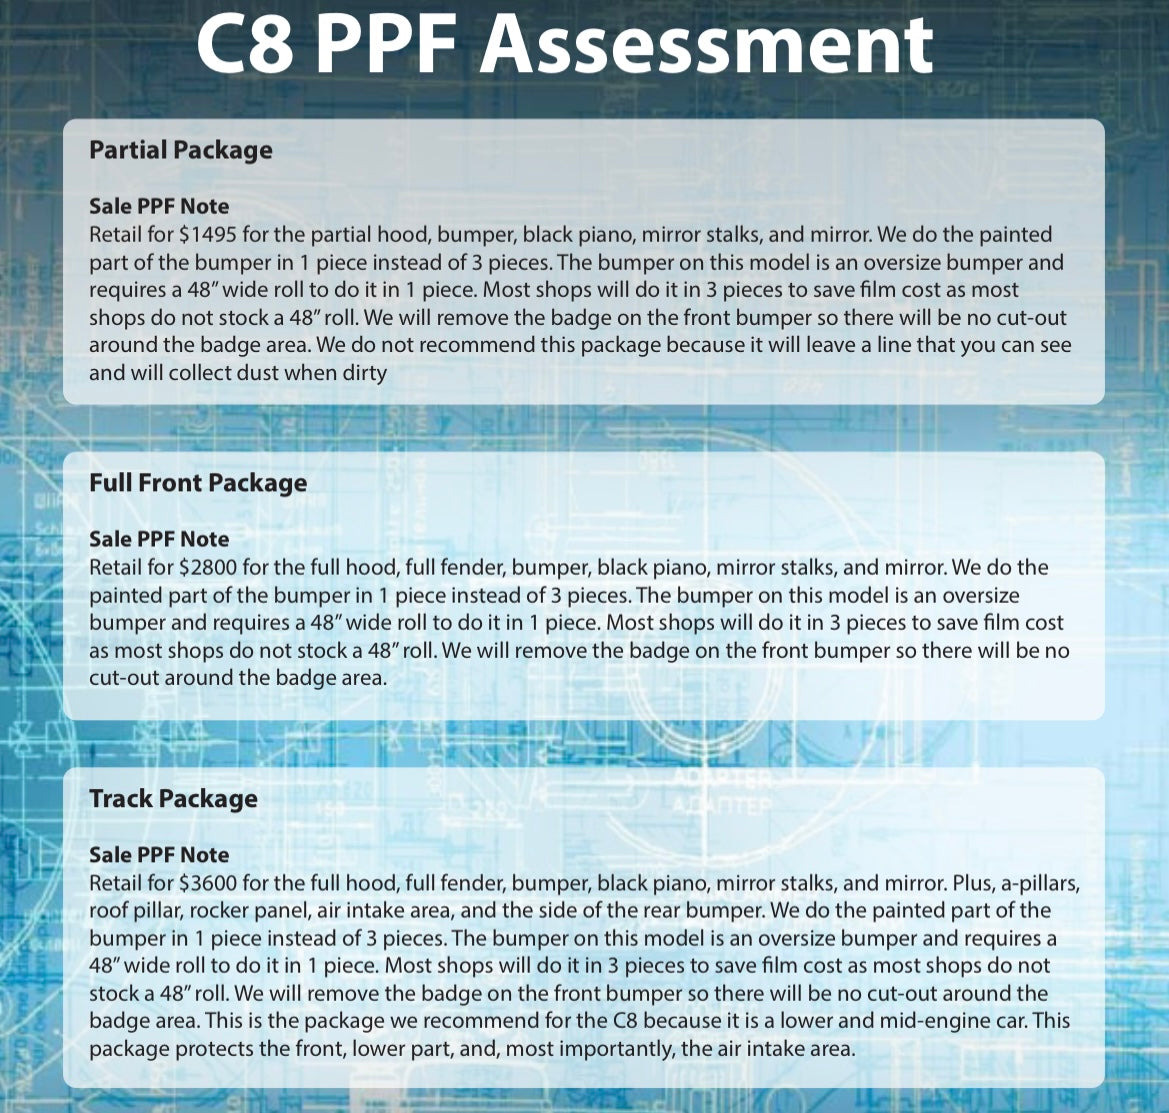 PPF Assessment